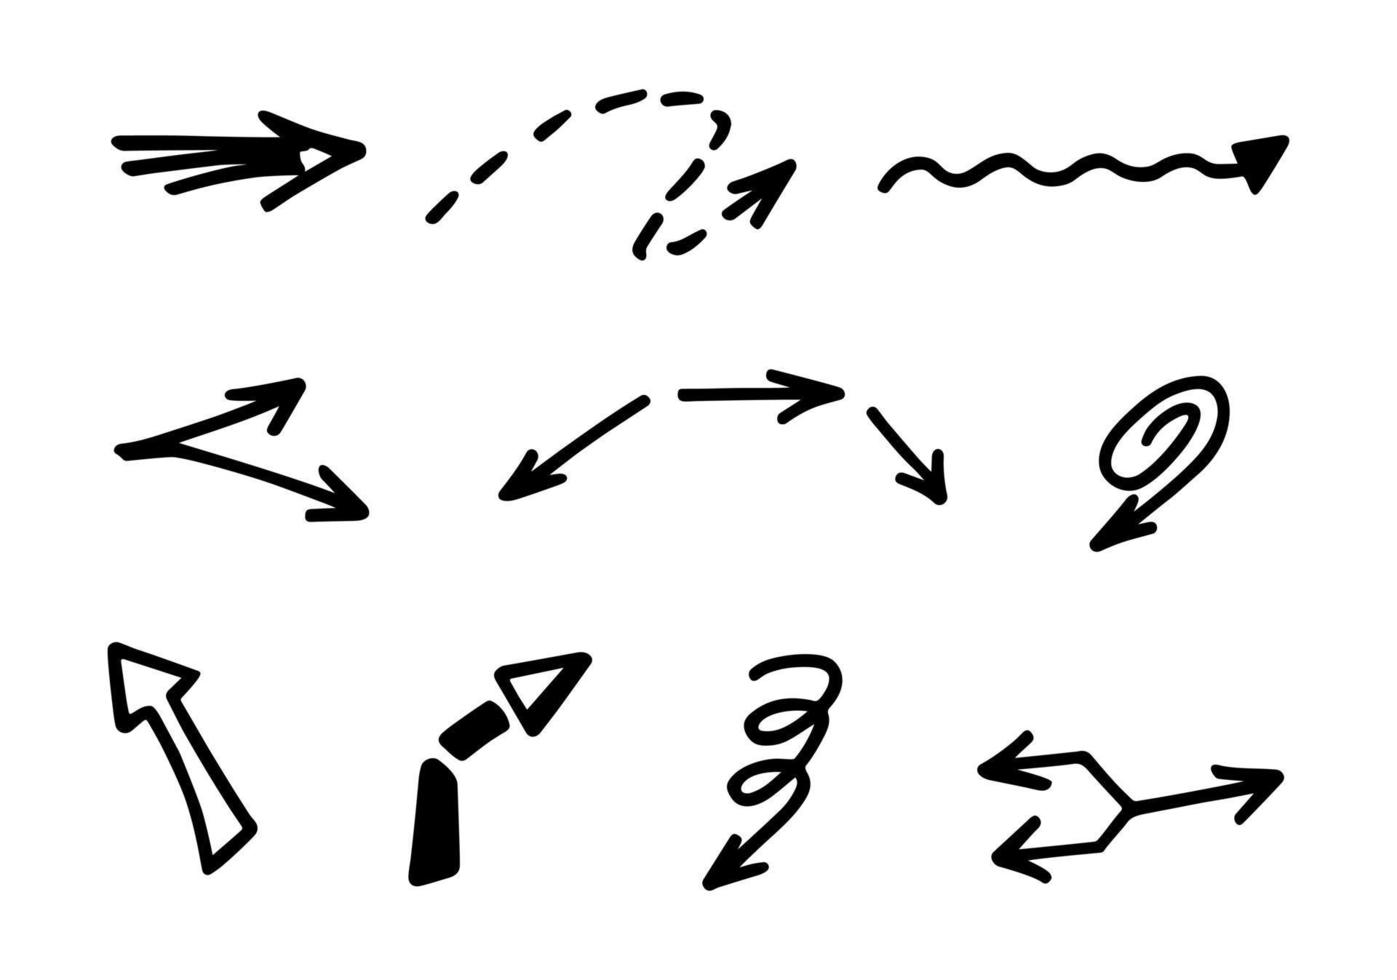 conjunto vetorial de setas desenhadas à mão, elementos para apresentação vetor